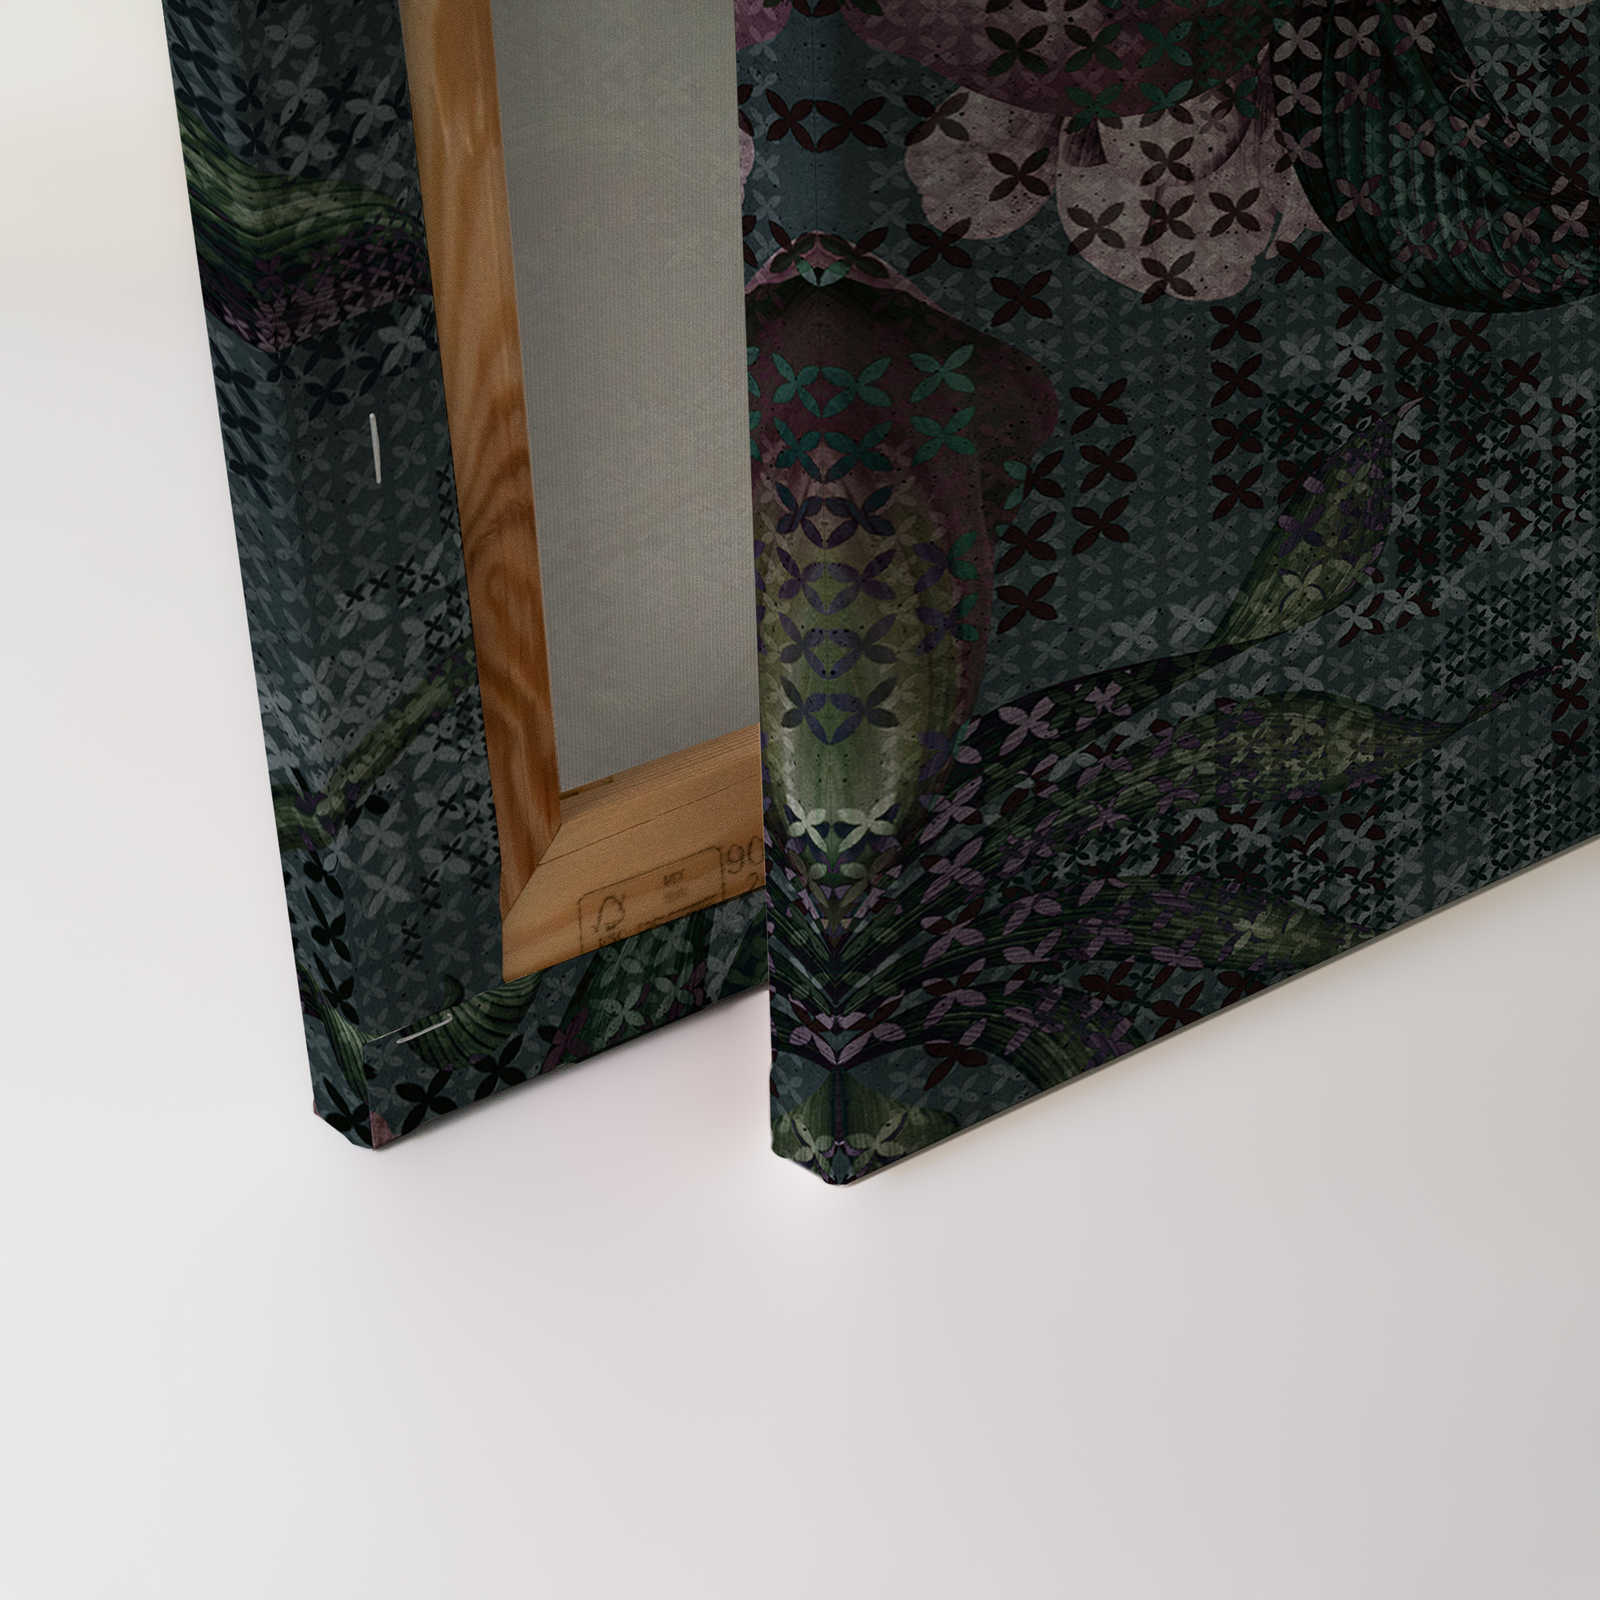             Blumen Leinwandbild Pixel Design – 0,90 m x 0,60 m
        